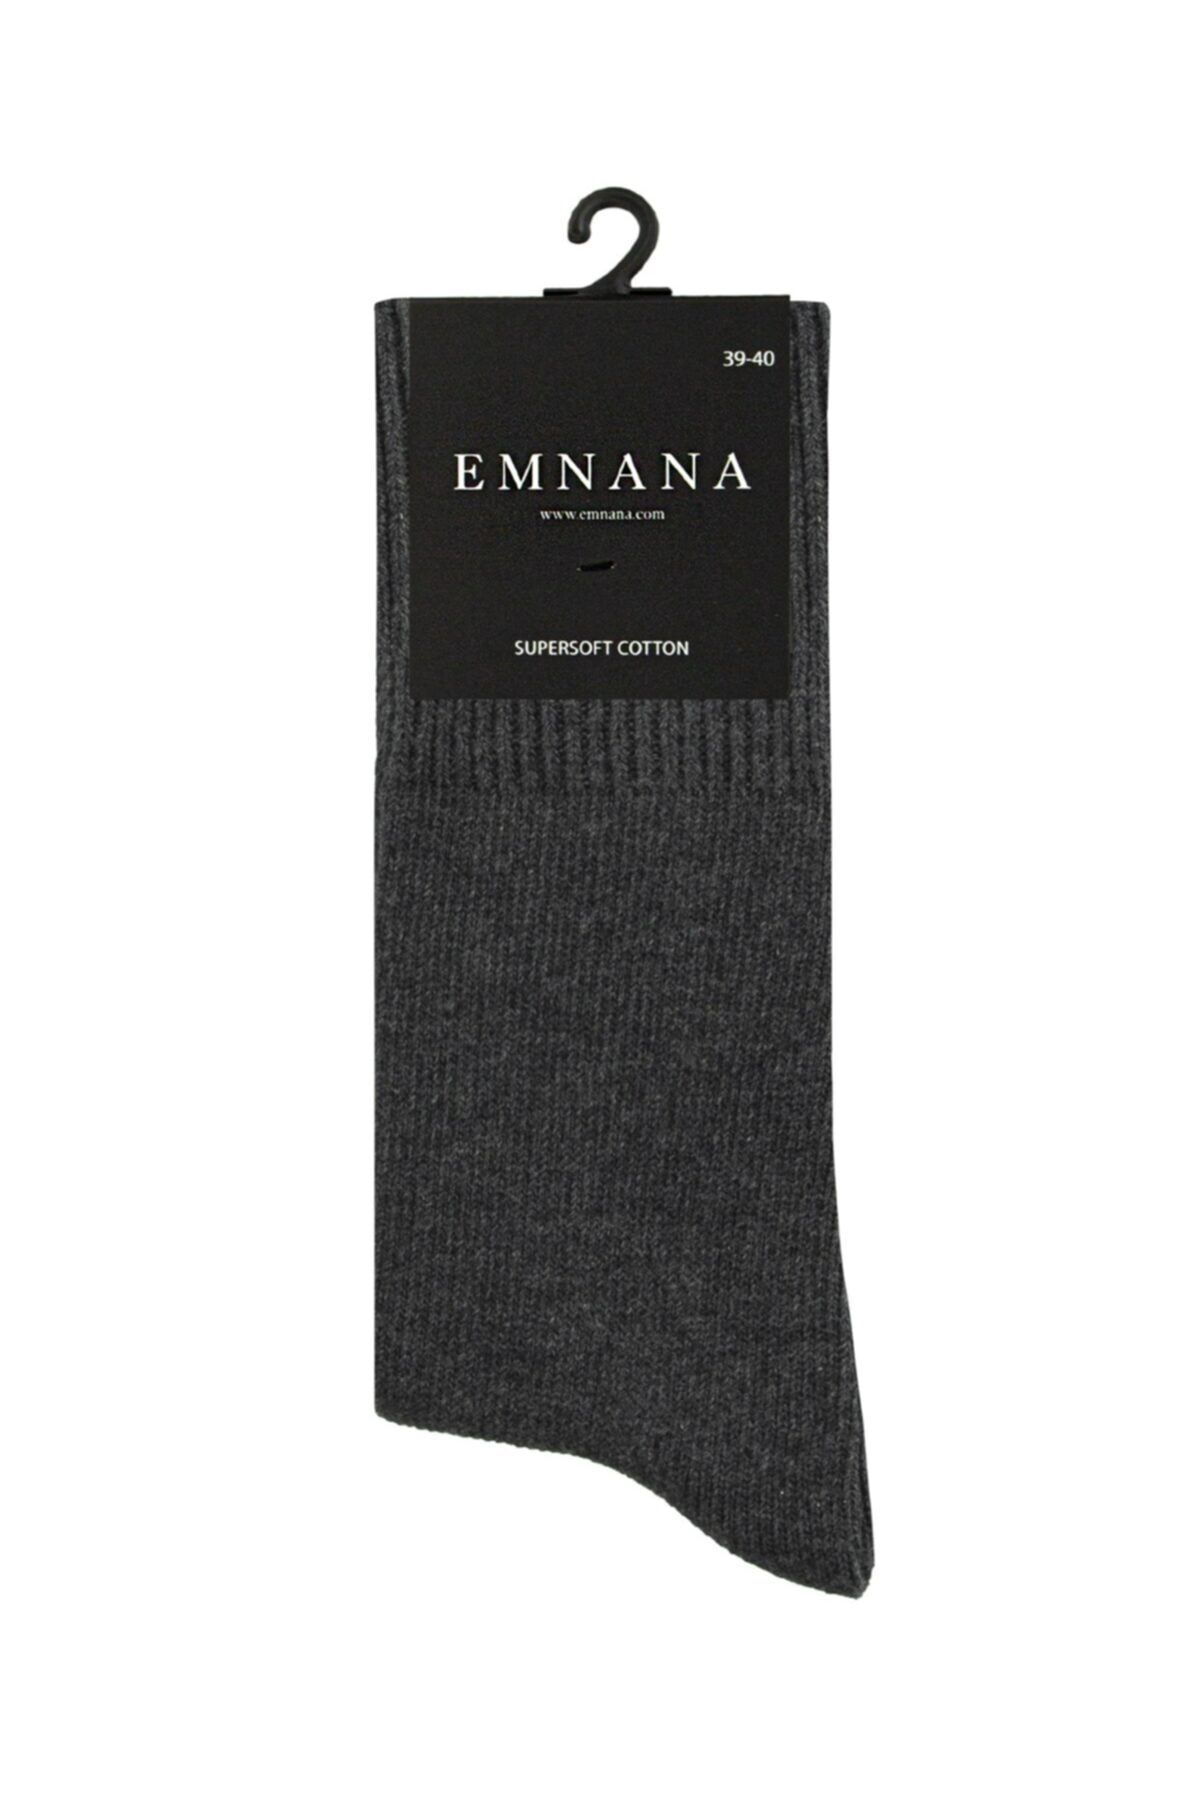 EMNANA 5 Adet Kalın Pamuklu Kışlık Erkek Çorap - Antrasit